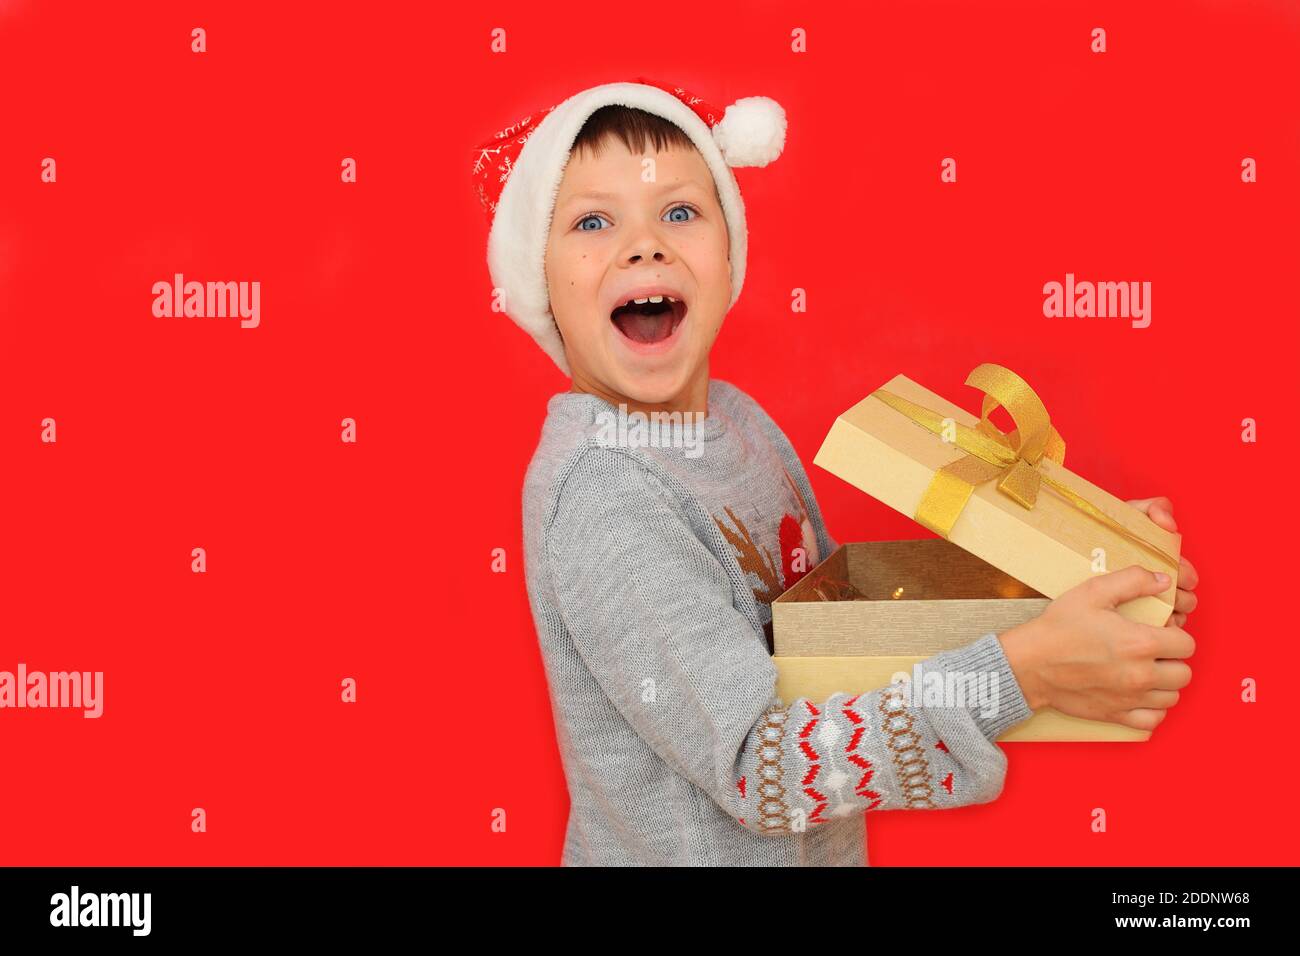 Un garçon dans un chapeau de père Noël et un chandail du nouvel an avec un cerf tiennent un cadeau du nouvel an sur fond rouge. L'enfant ressent les émotions de recevoir un cadeau de Noël Banque D'Images